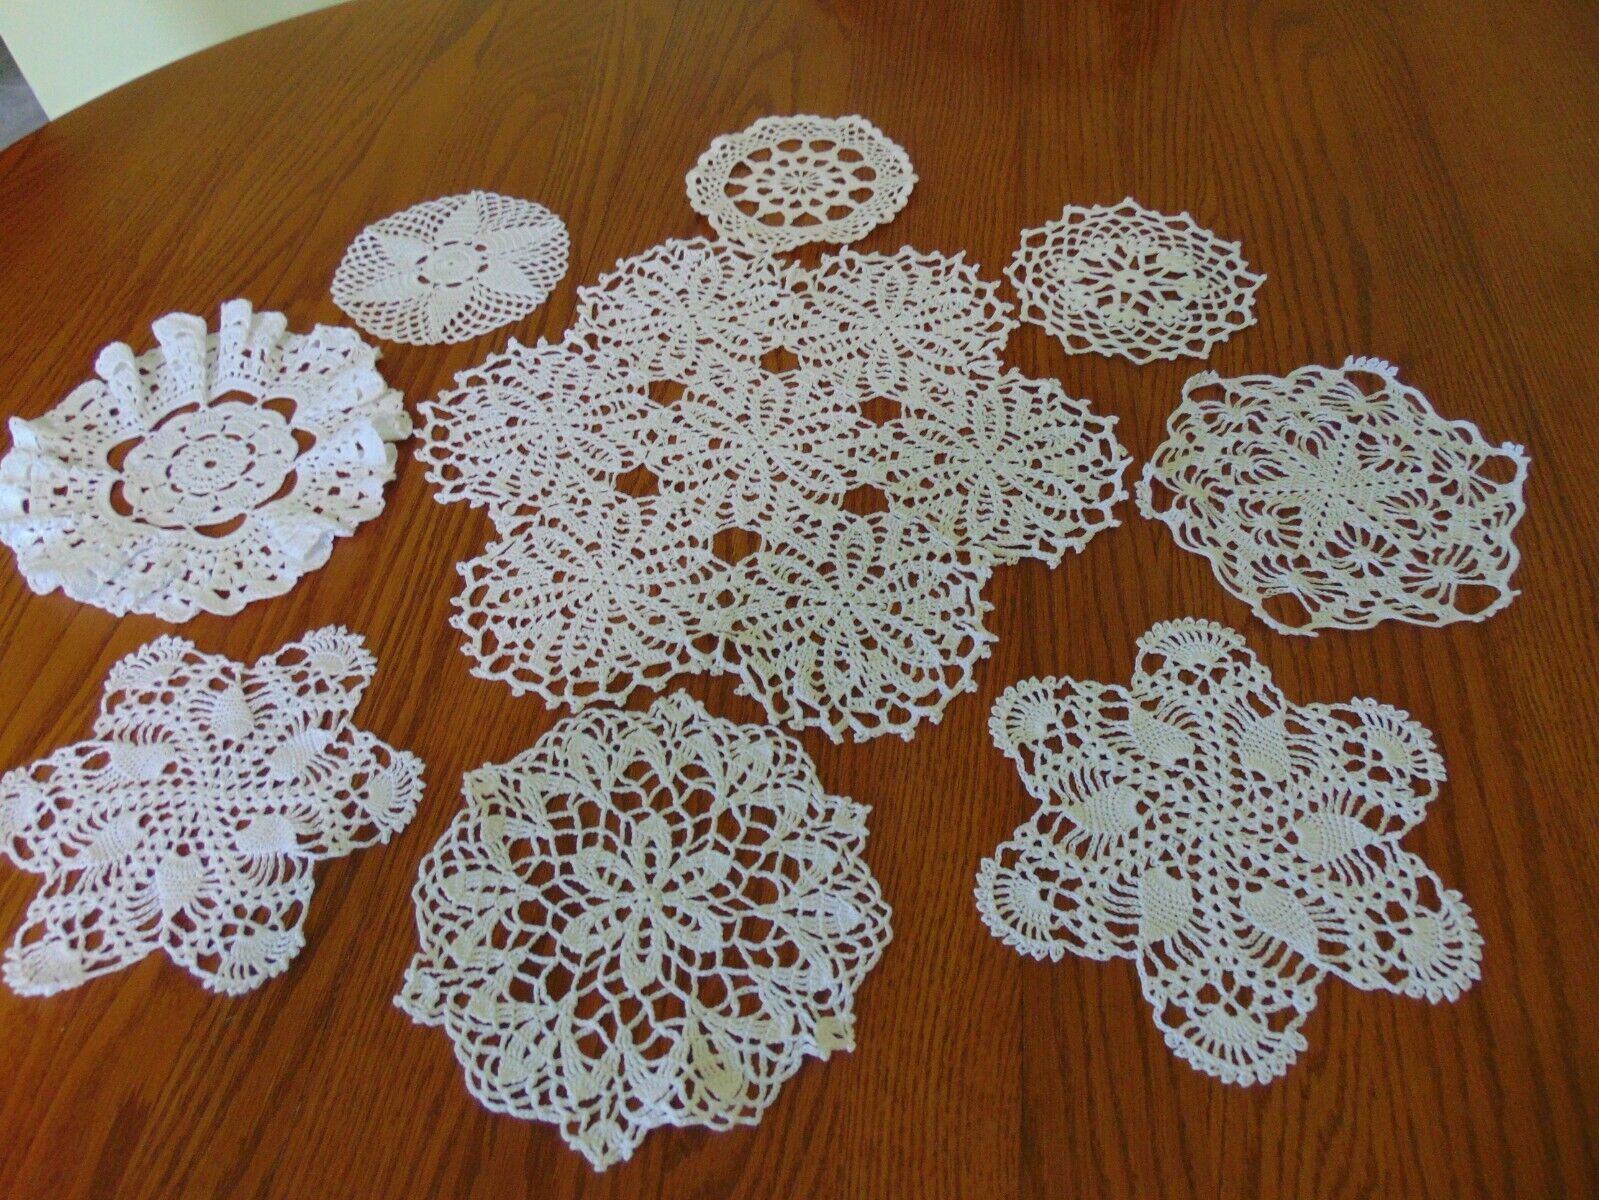 Lot of 9 BRAND NEW Handmade Pineapple Crochet Doilies-all white